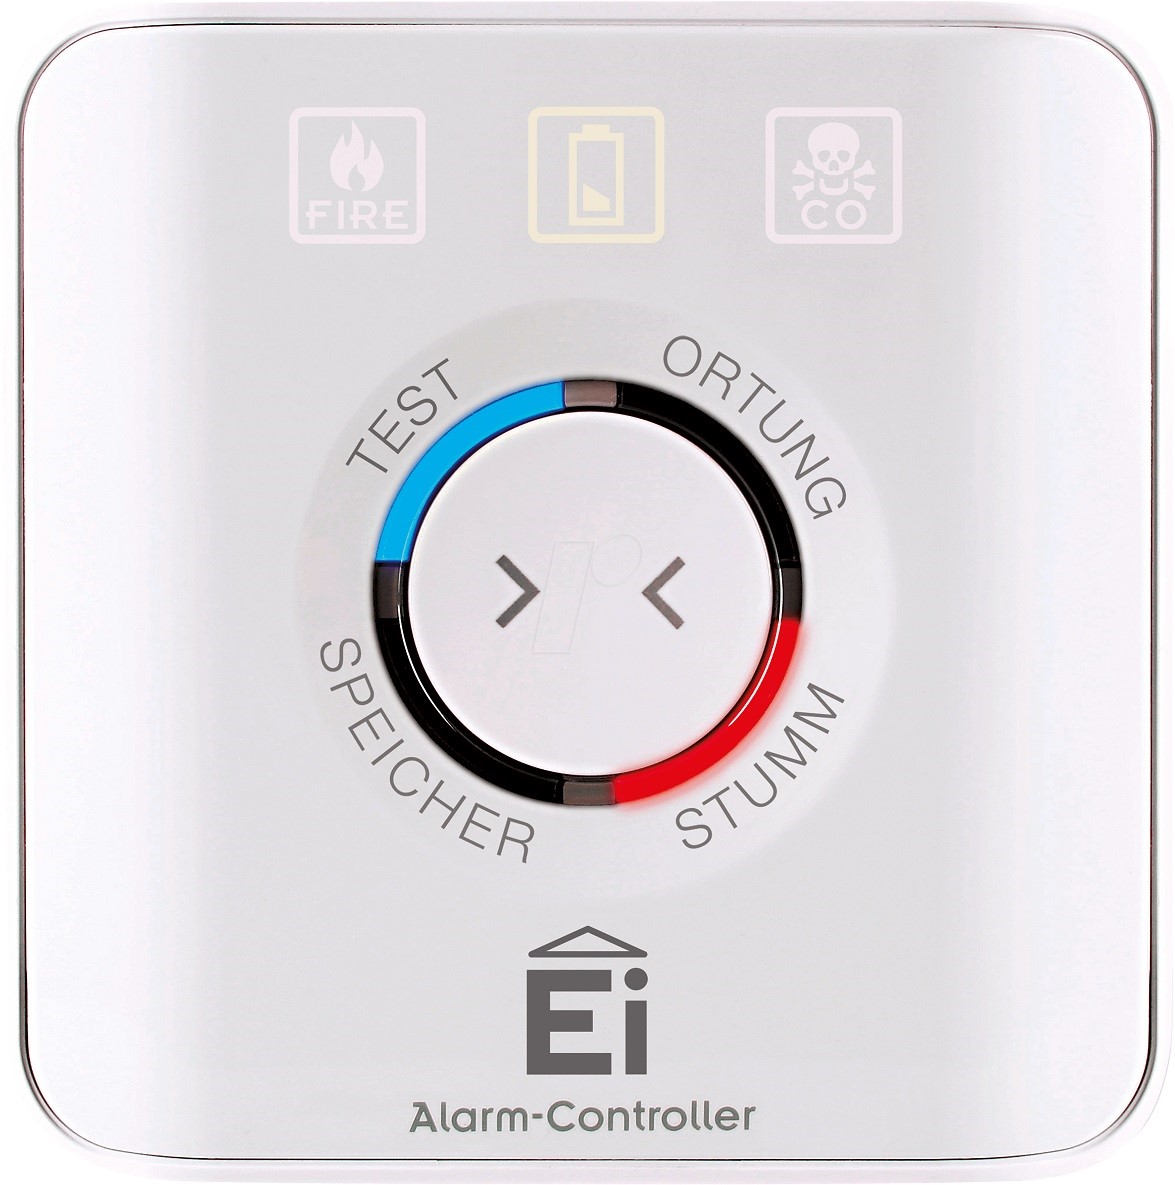 EI 450 Alarm-Controller